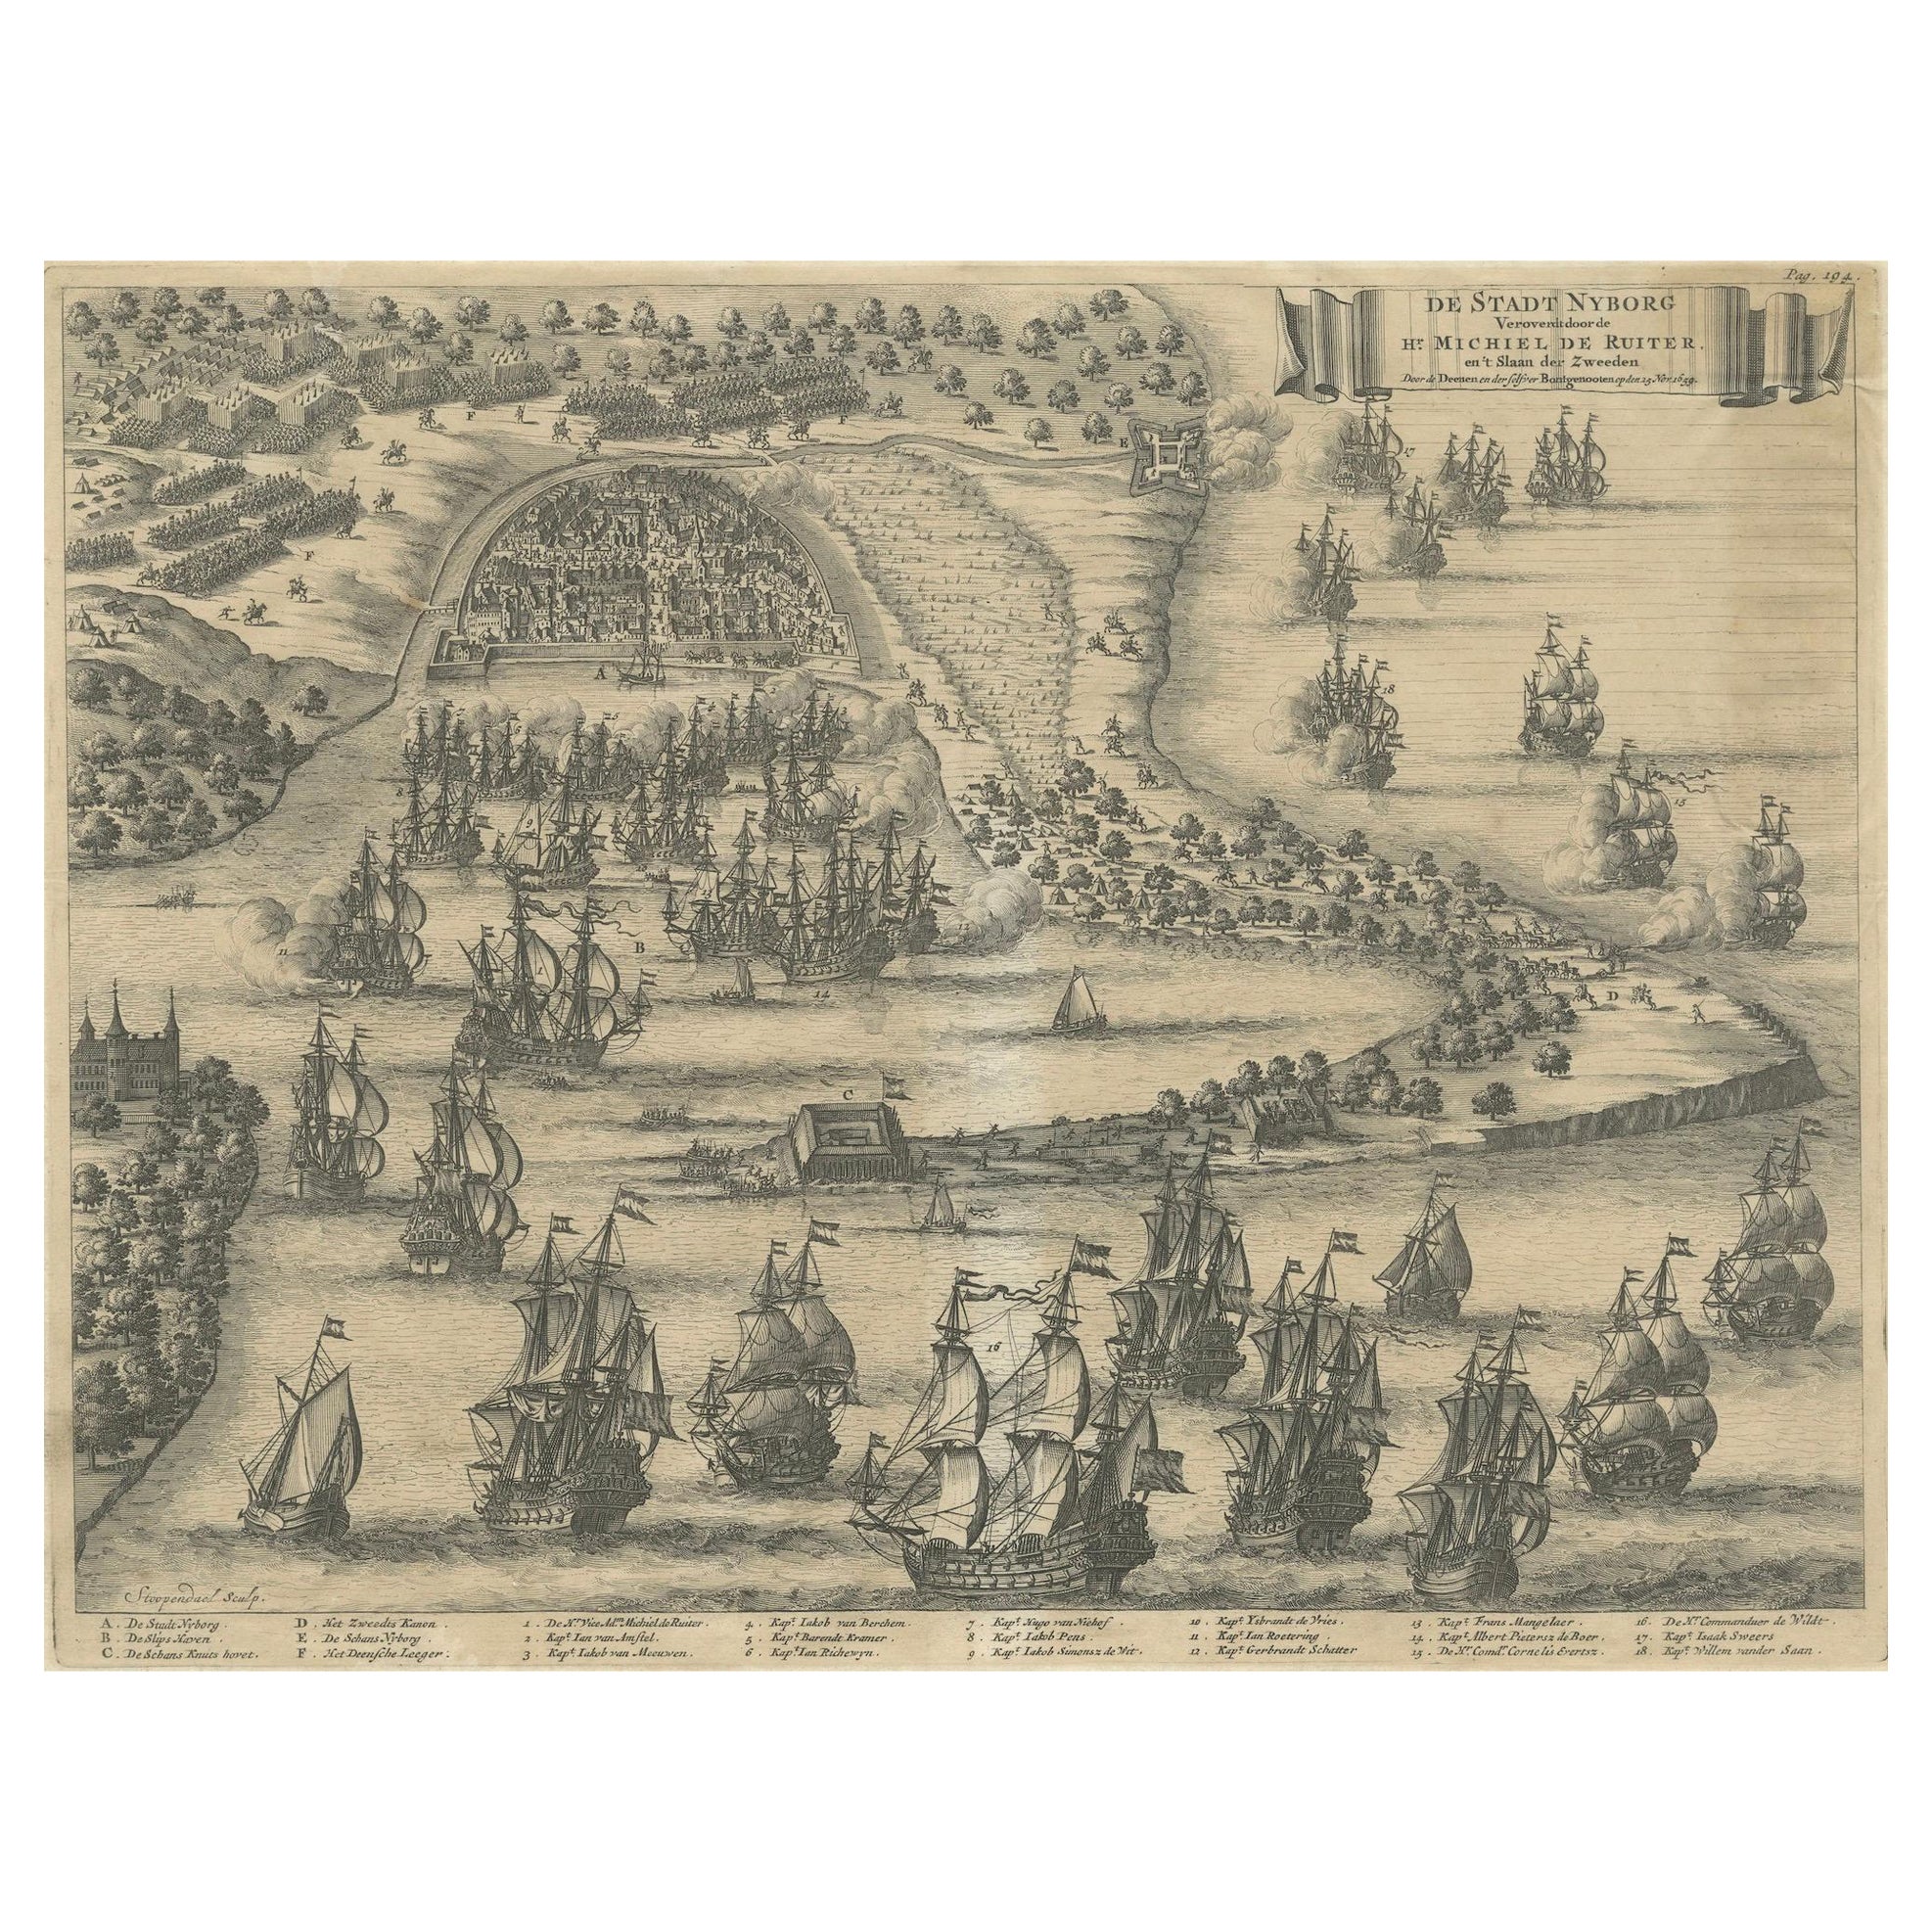 La Siege de Nyborg, 1659 : une bataille stratégique de la guerre danoise-suédoise, 1746